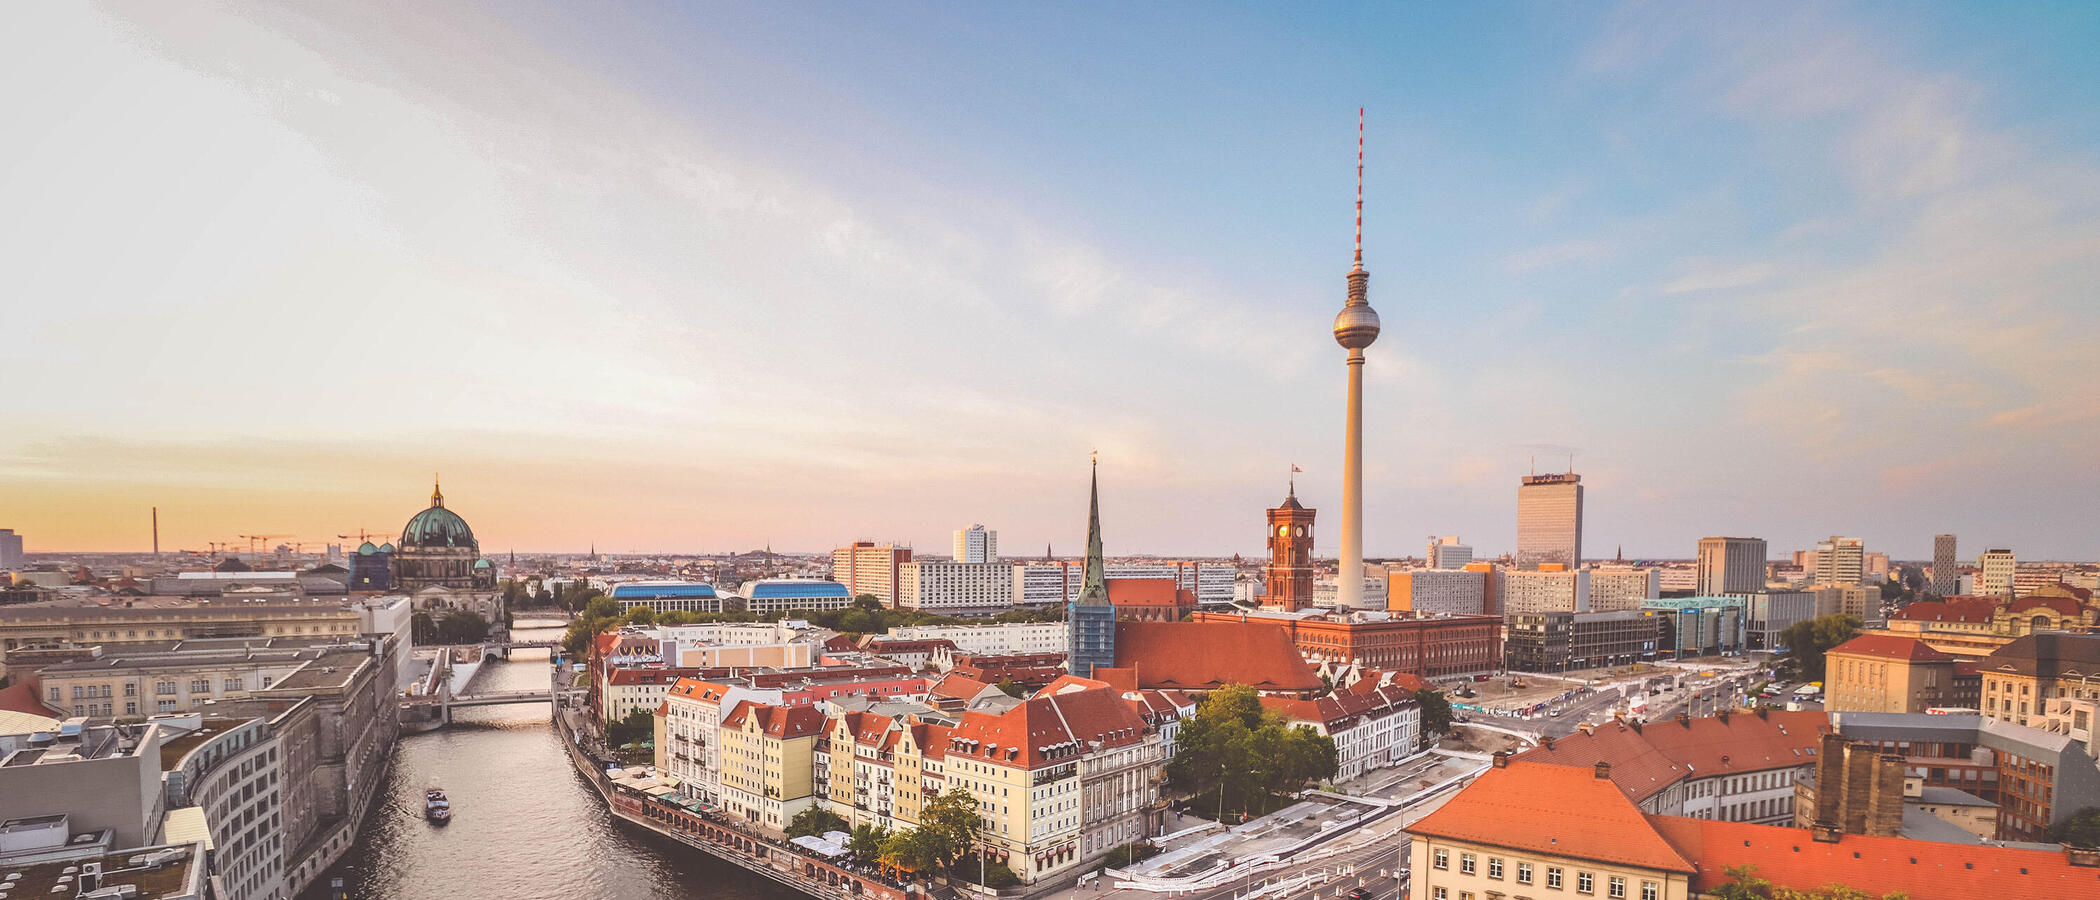 Ein Blick auf die Dächer von Berlin-Mitte. Im Hintergrund sieht man den Fernsehturm und den Berliner Dom.